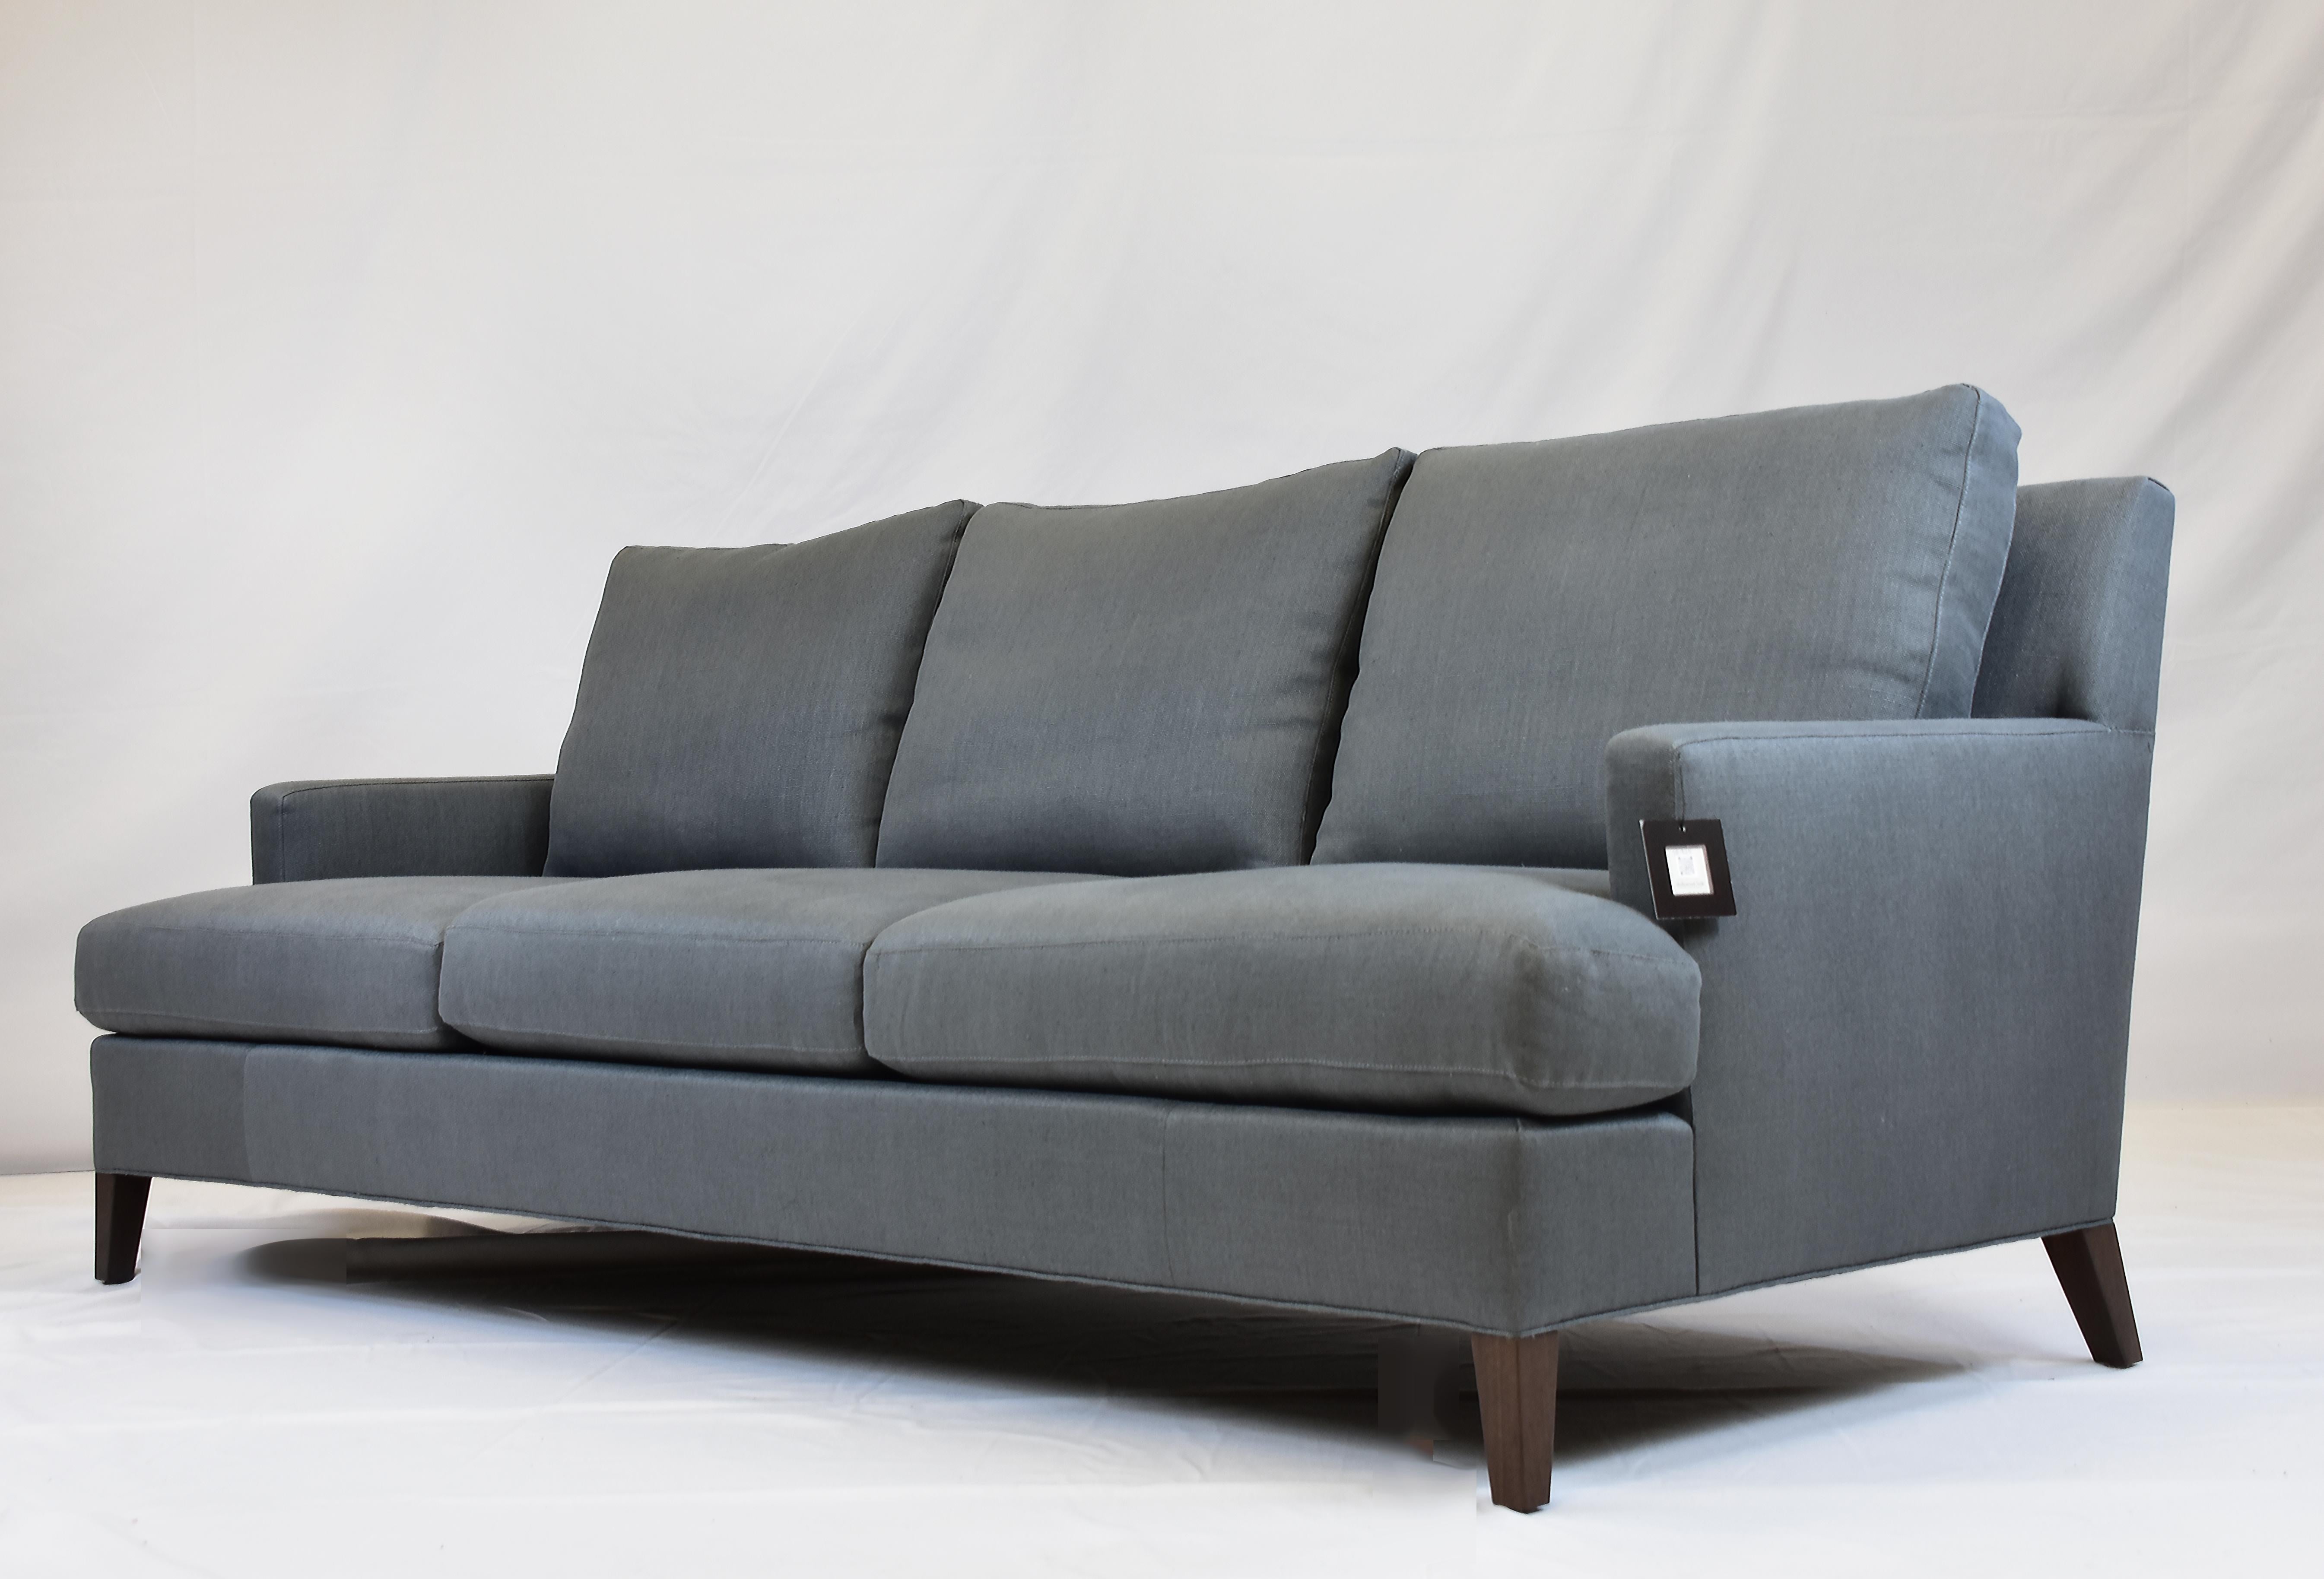 Le Jeune-Polsterung Hollywood-Sofa-Showroom-Modell

Zum Verkauf angeboten wird ein Le Jeune Upholstery HOLLYWOOD S8.923 Sofa Showroom-Modell.  Dieses Sofa ist mit angemessenen Proportionen für kleine bis mittelgroße ROOMS gebaut. Das allgemeine